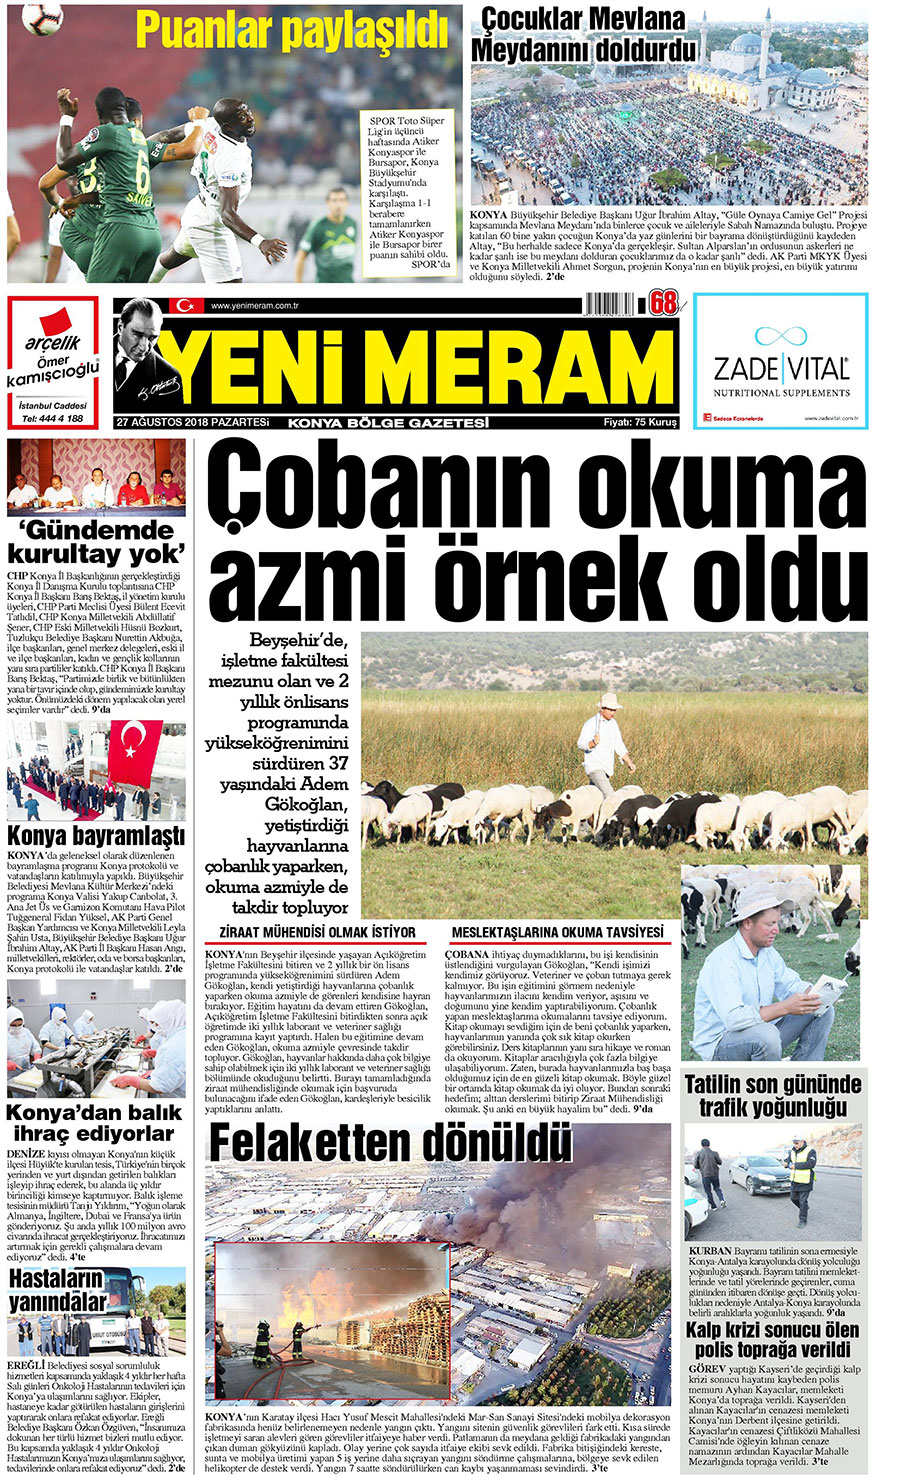 27 Ağustos 2018 Yeni Meram Gazetesi